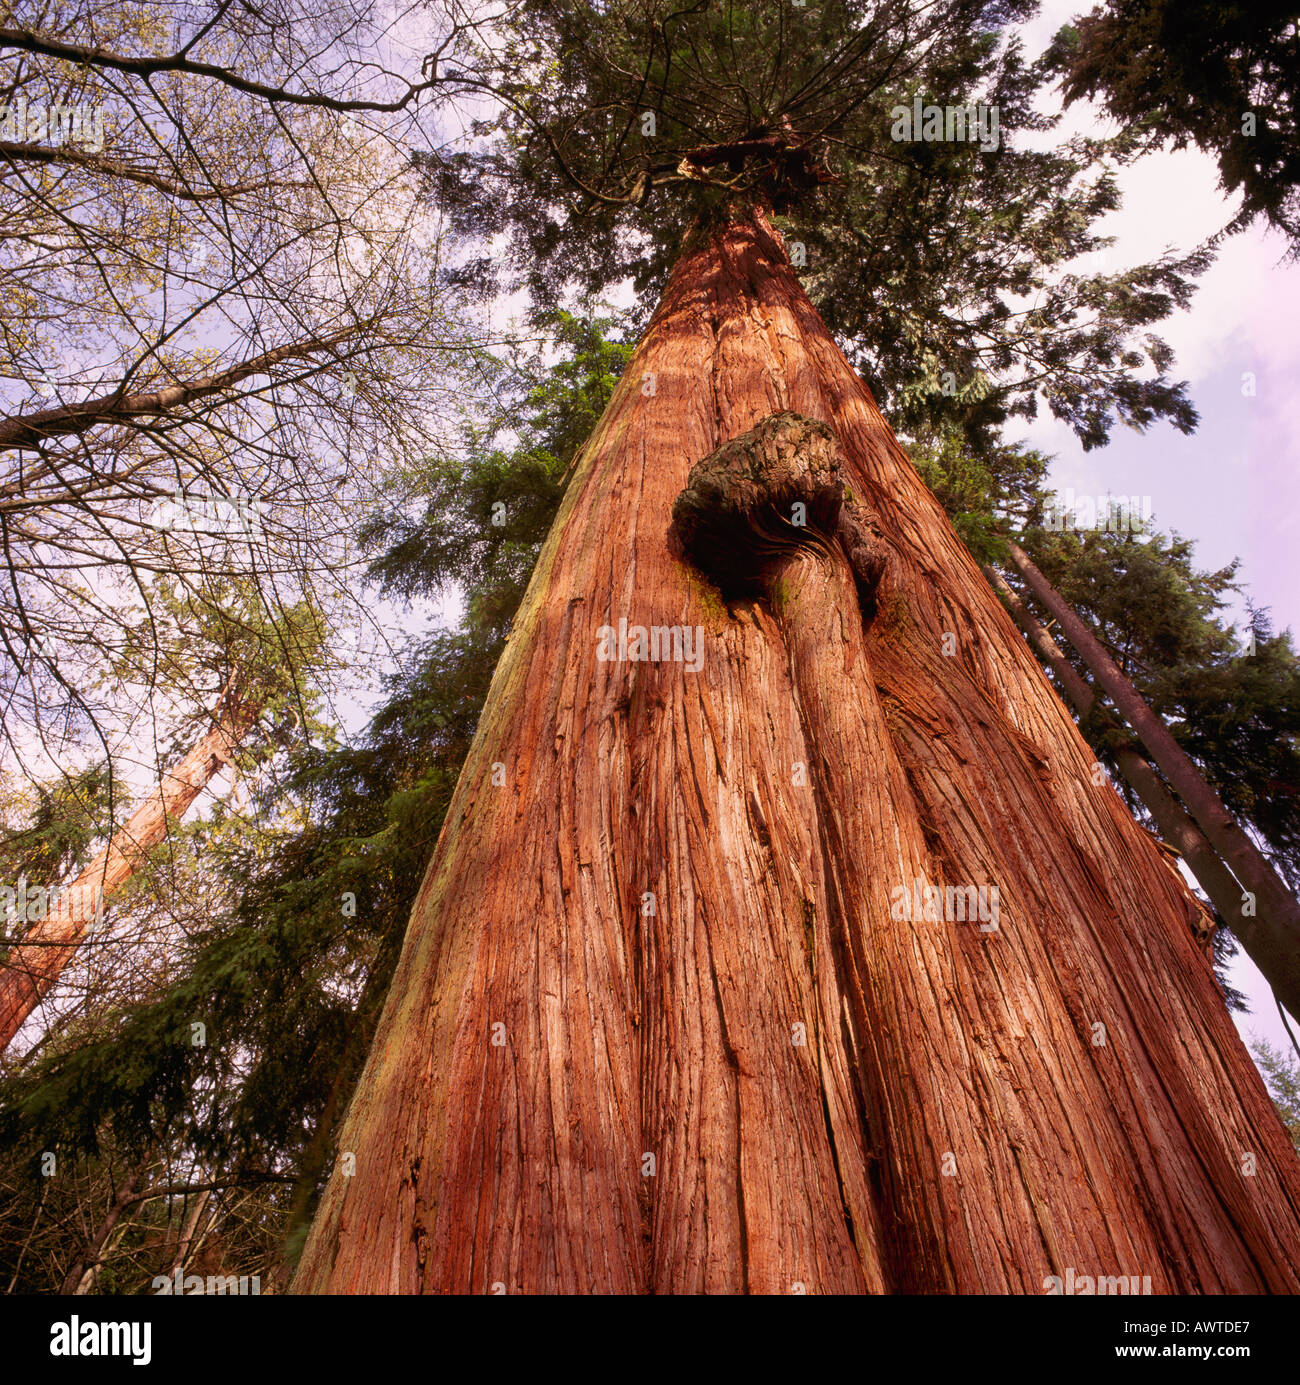 Buscando un gran y alto cedro rojo del tronco de un árbol en un bosque a lo  largo de la costa oeste del Pacífico de la Columbia Británica, Canadá  Fotografía de stock -